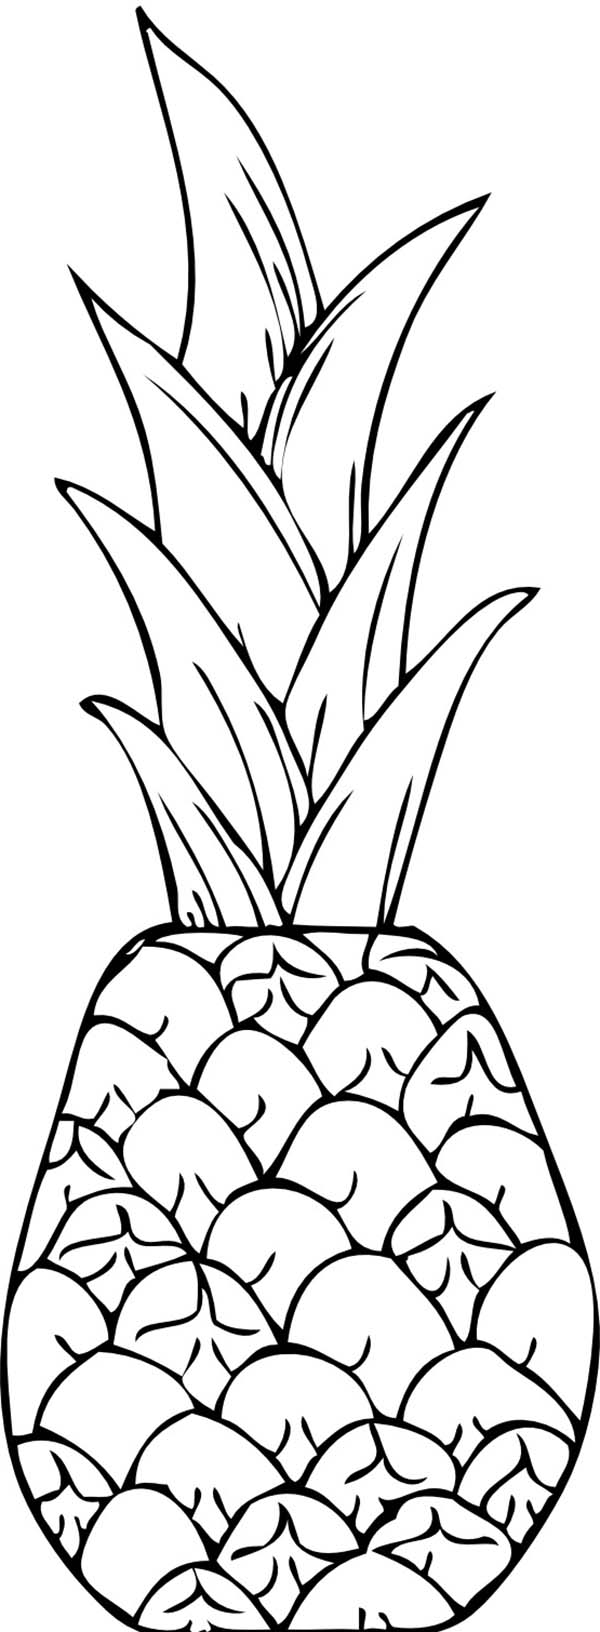 obrázek ananasu k tisku